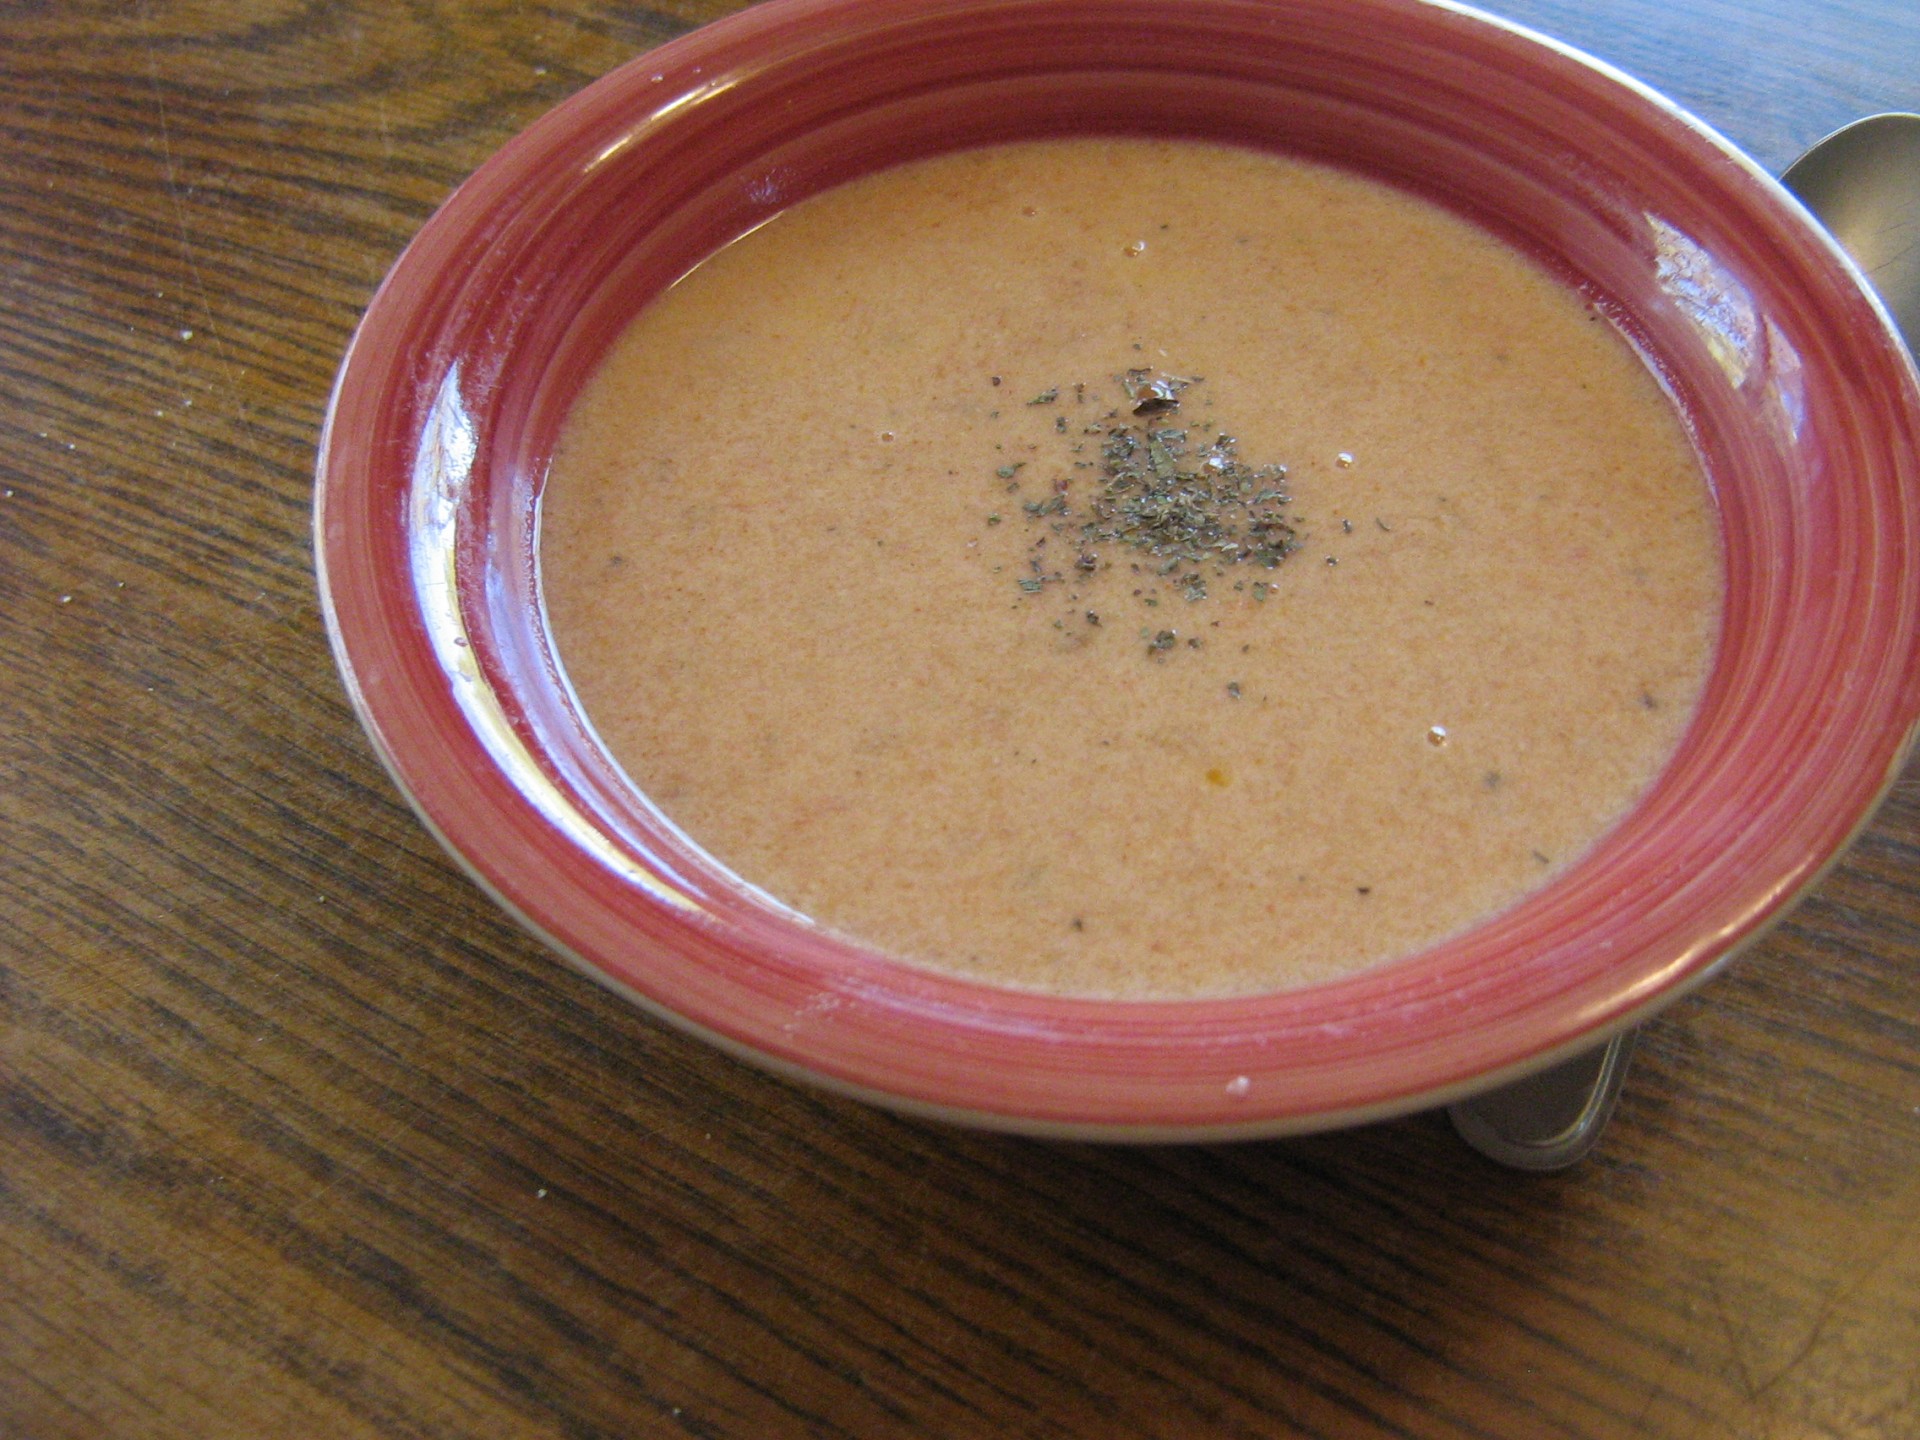 Tomato-onion Soup